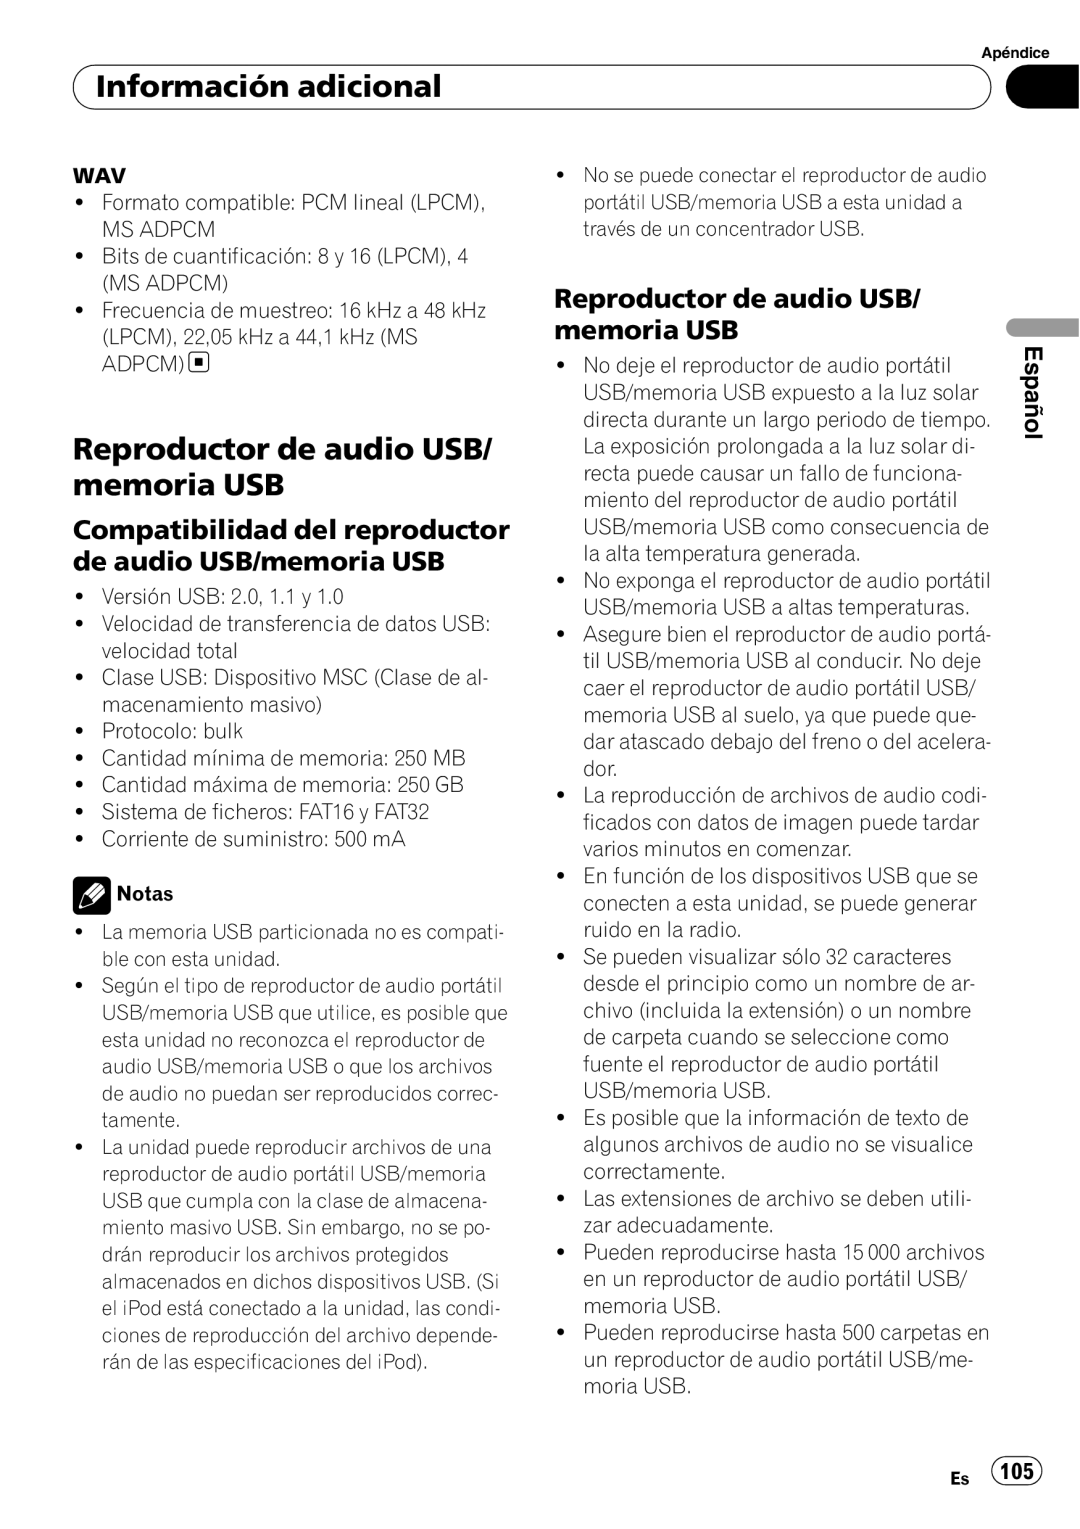 Pioneer DEH-P4050UB operation manual Reproductor de audio USB/ memoria USB, Información adicional, Español 